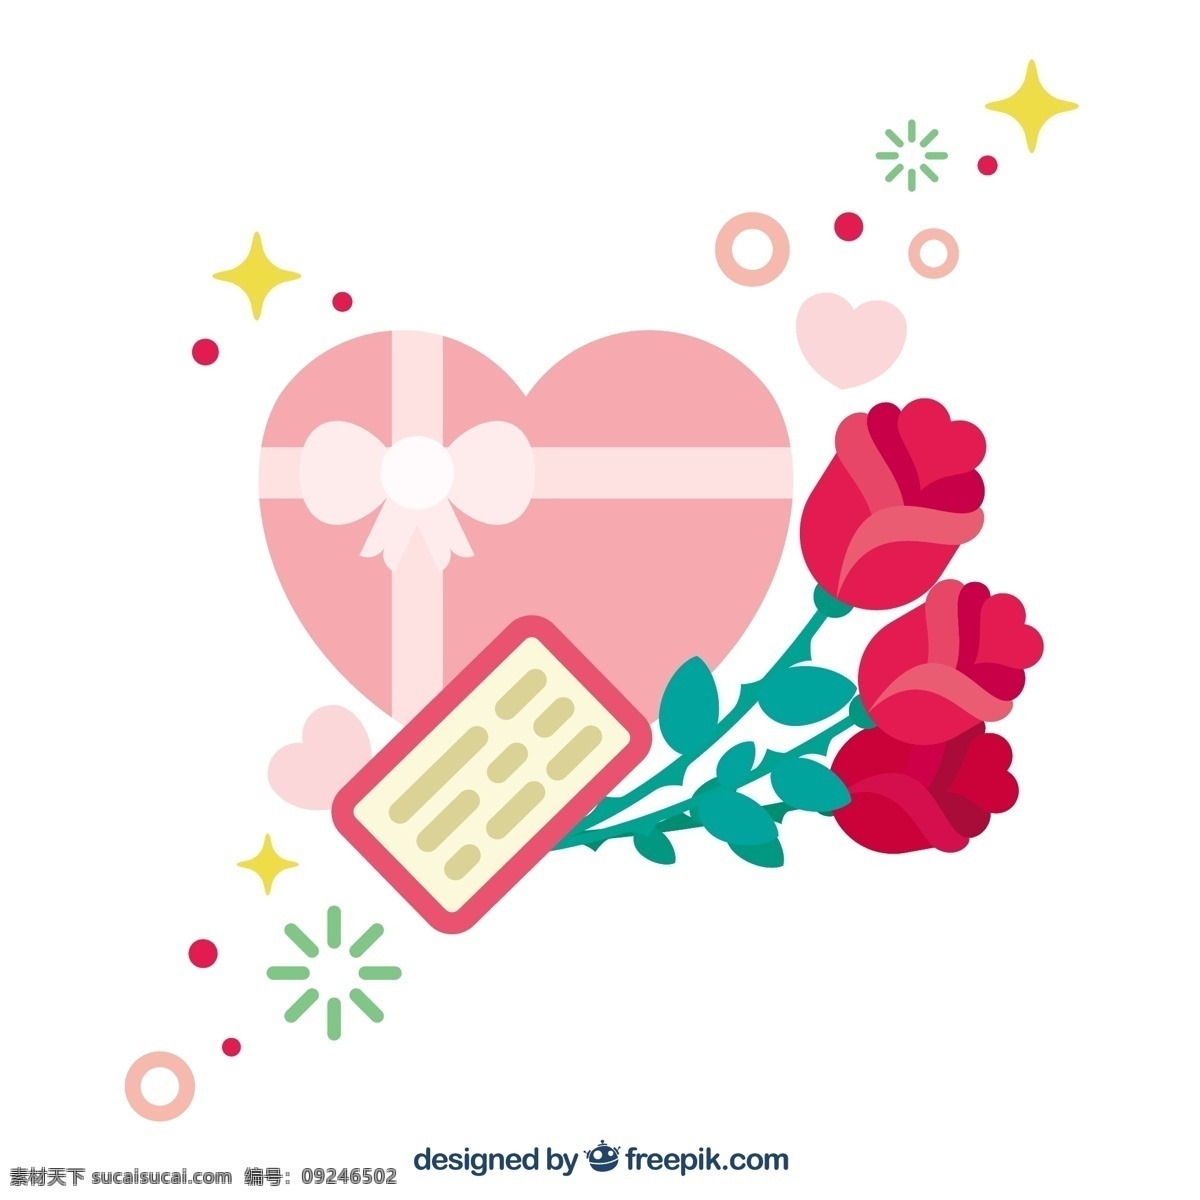 可爱 背景 玫瑰 心形 盒子 花卉 爱情 盒 自然 花卉背景 春天 颜色 平板 植物 丰富多彩 平面设计